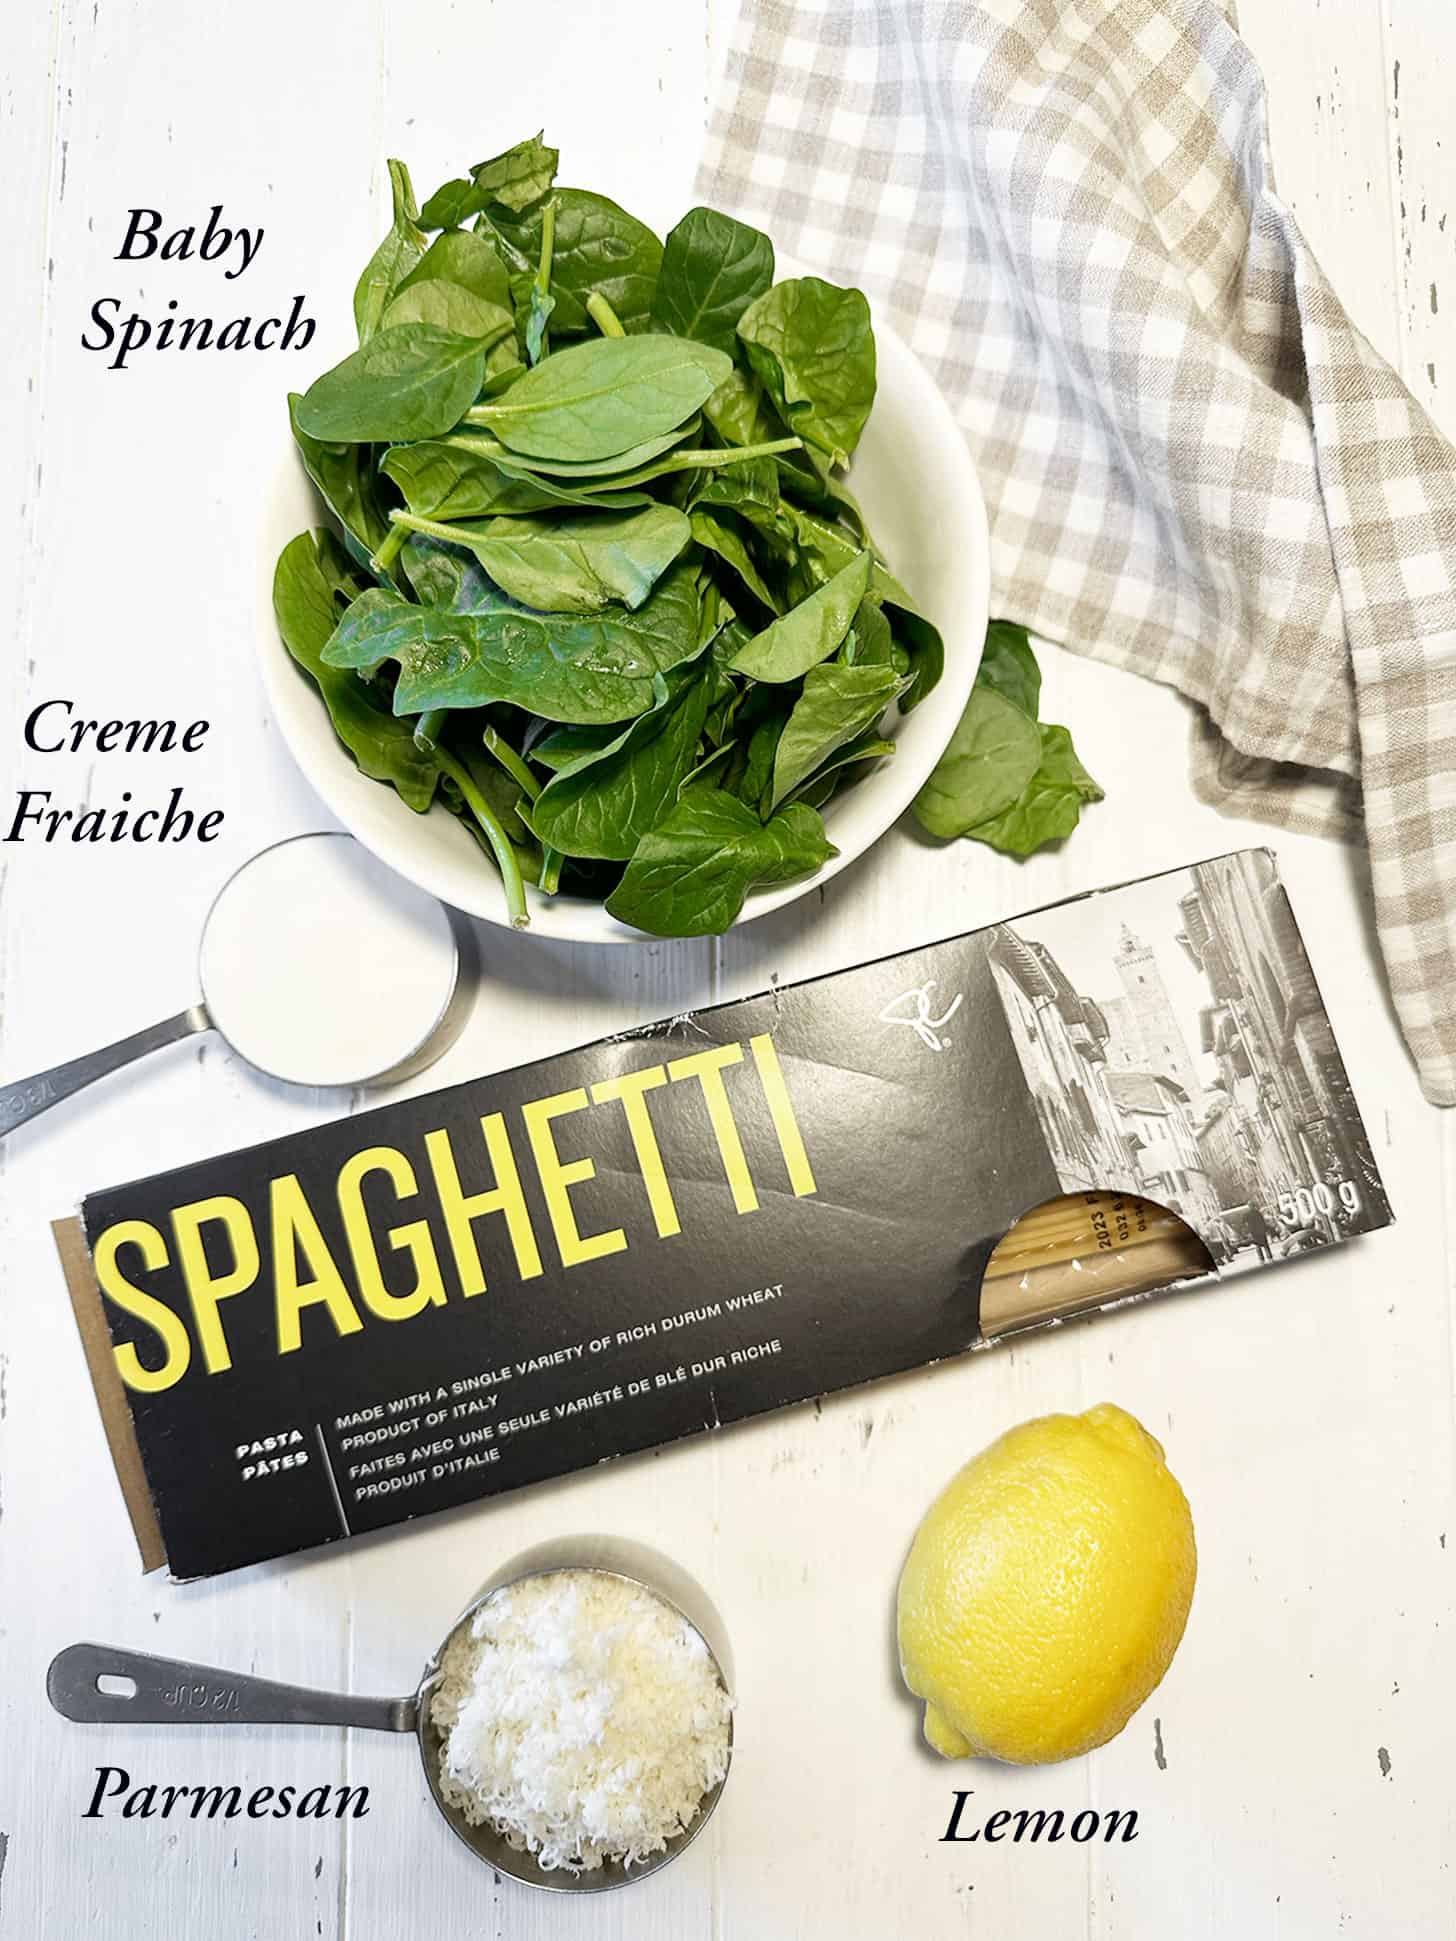 Ingredients to make lemon spinach pasta.